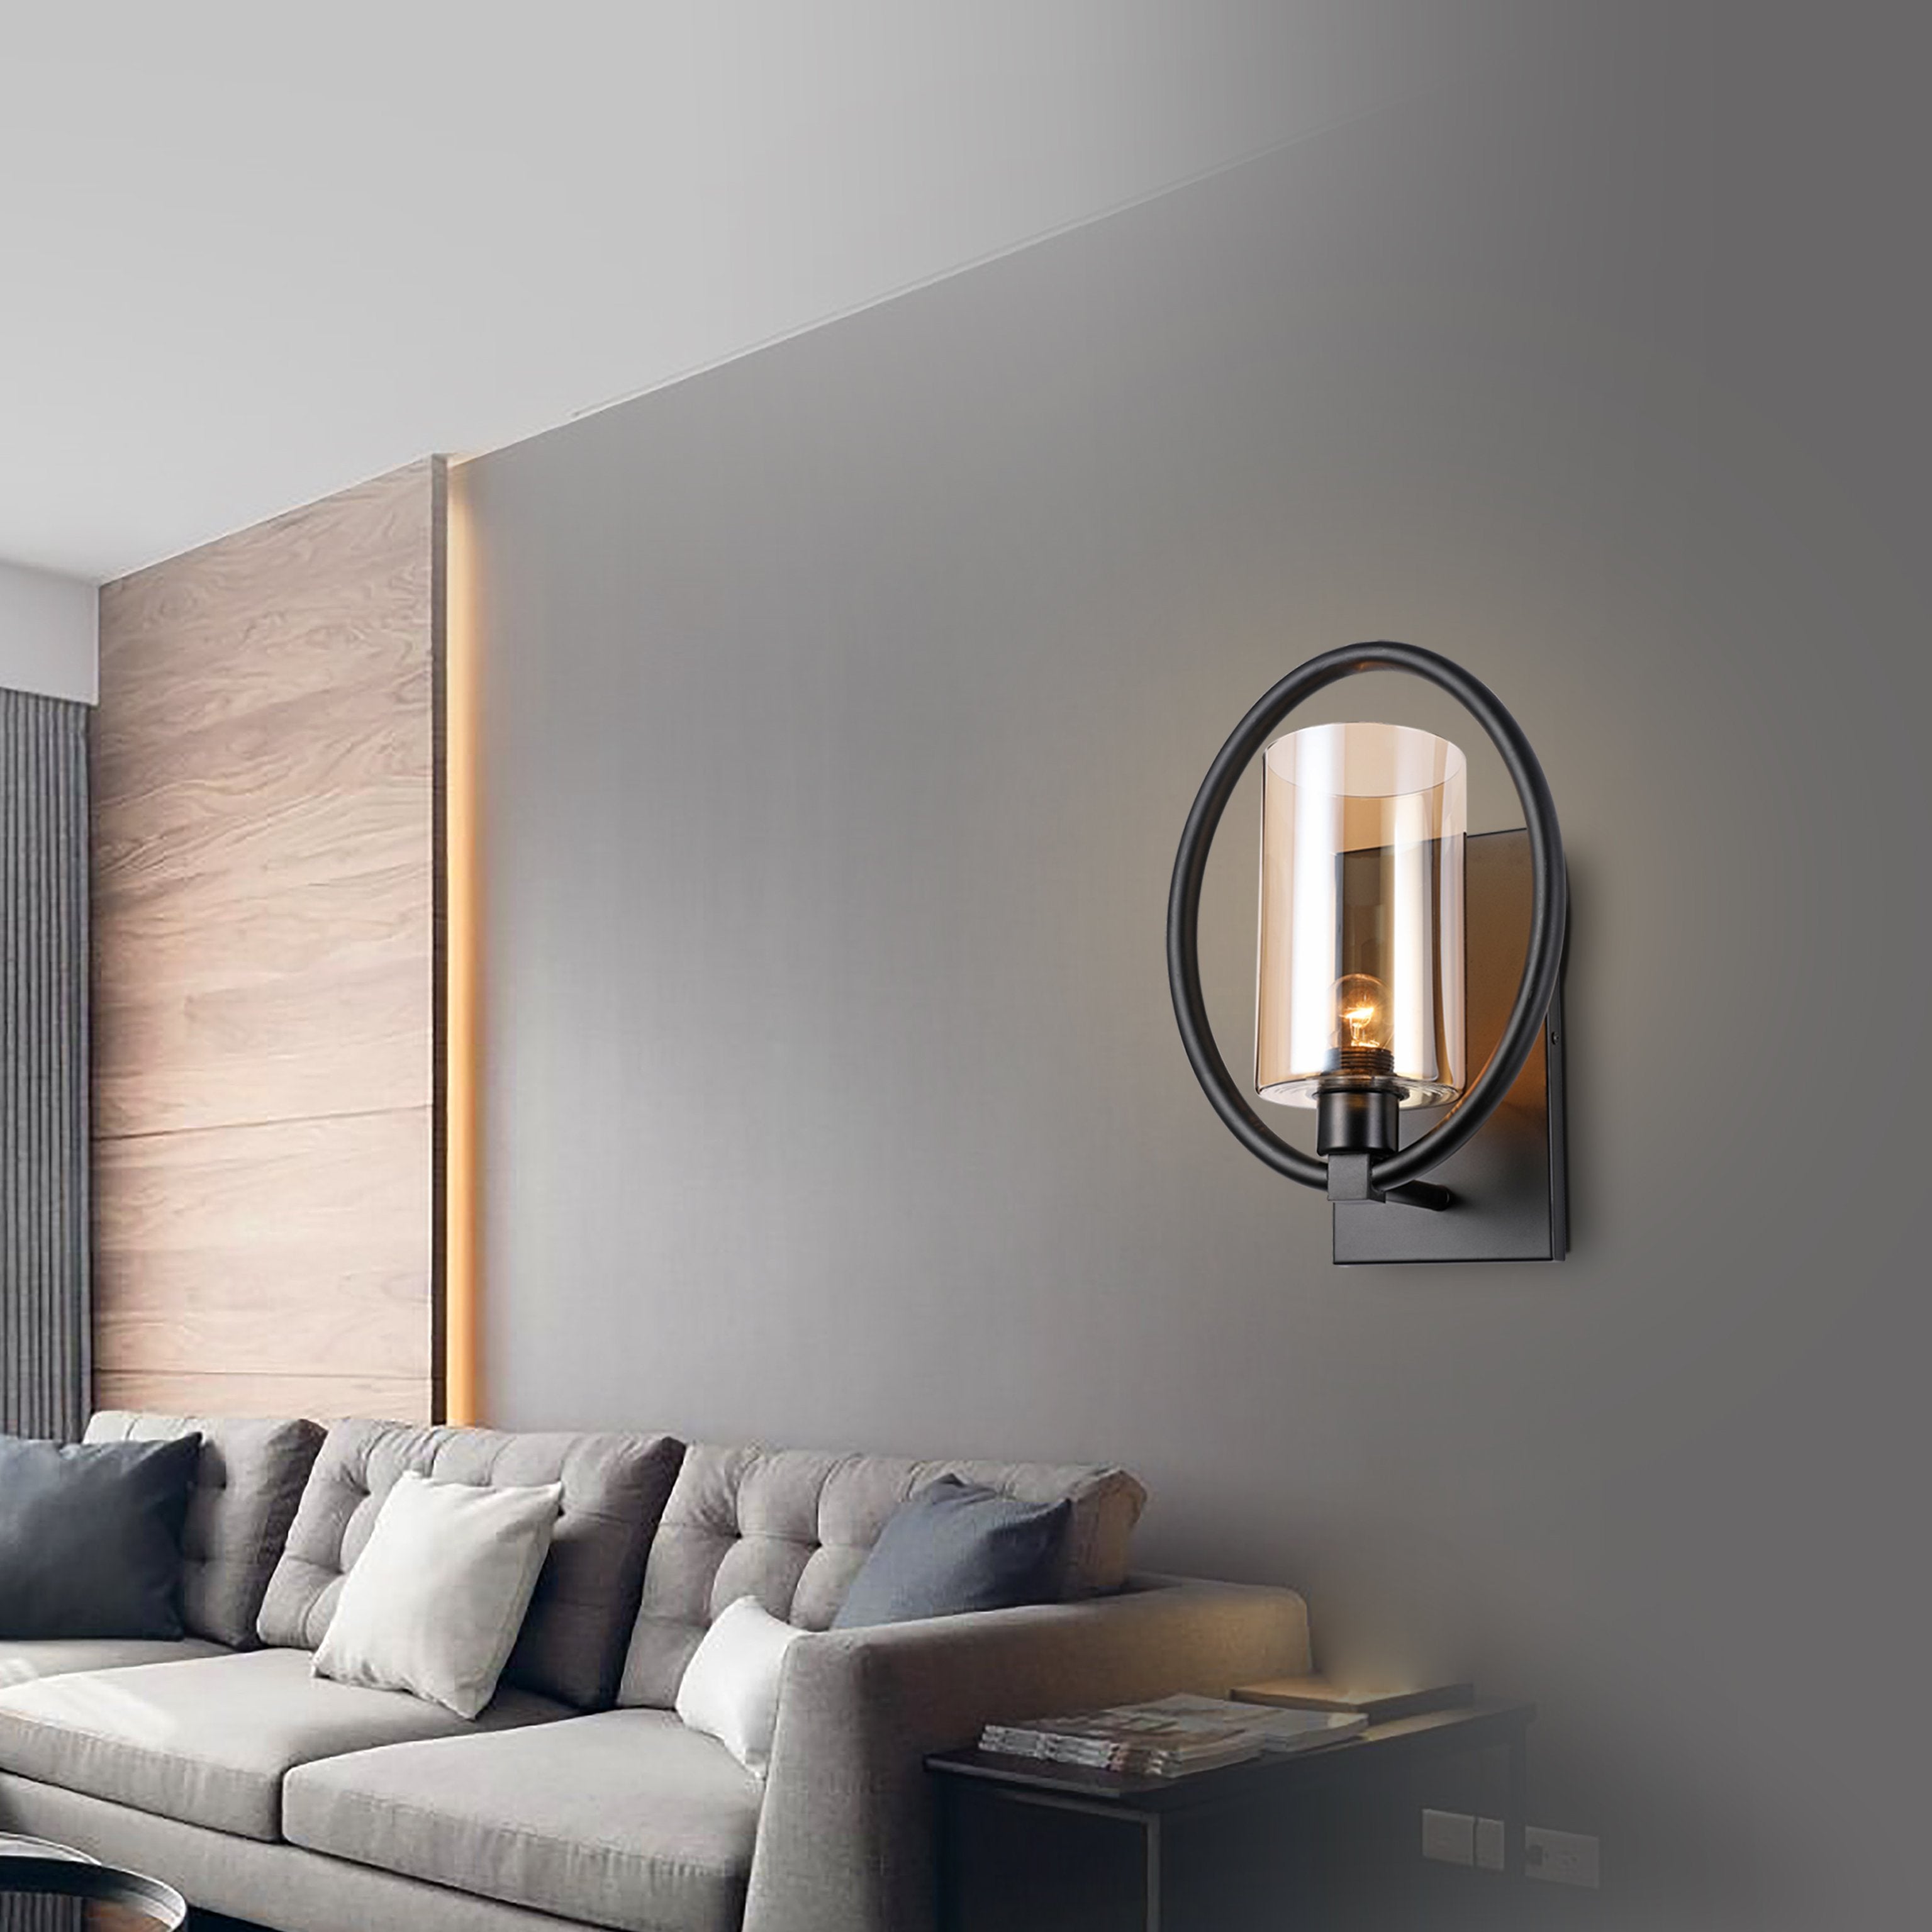 LED Wall Light & Floor Lamp